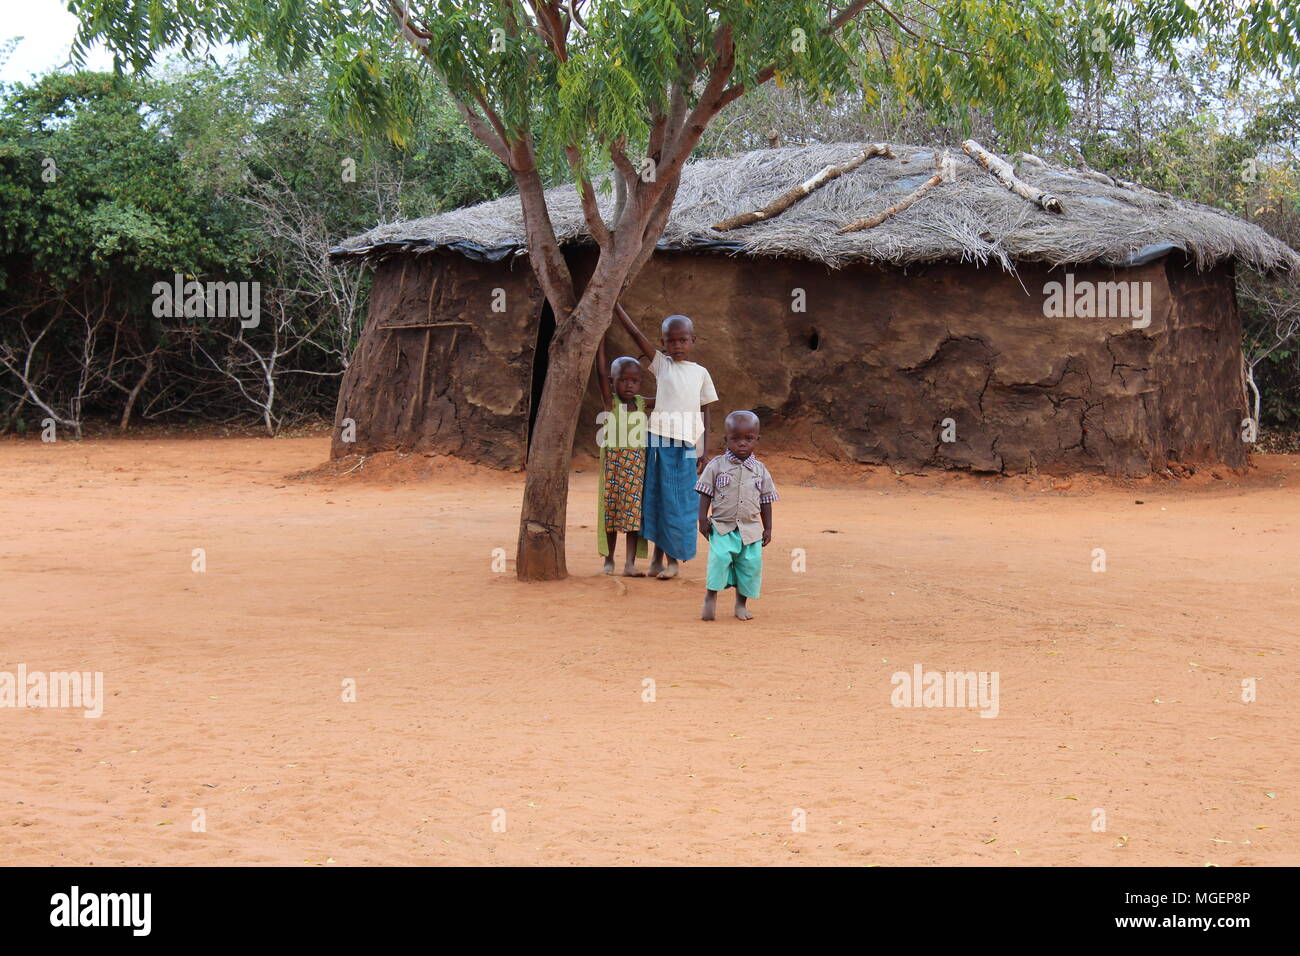 Sourire d'enfants africains dépeint sous un arbre dans un petit village africain Banque D'Images